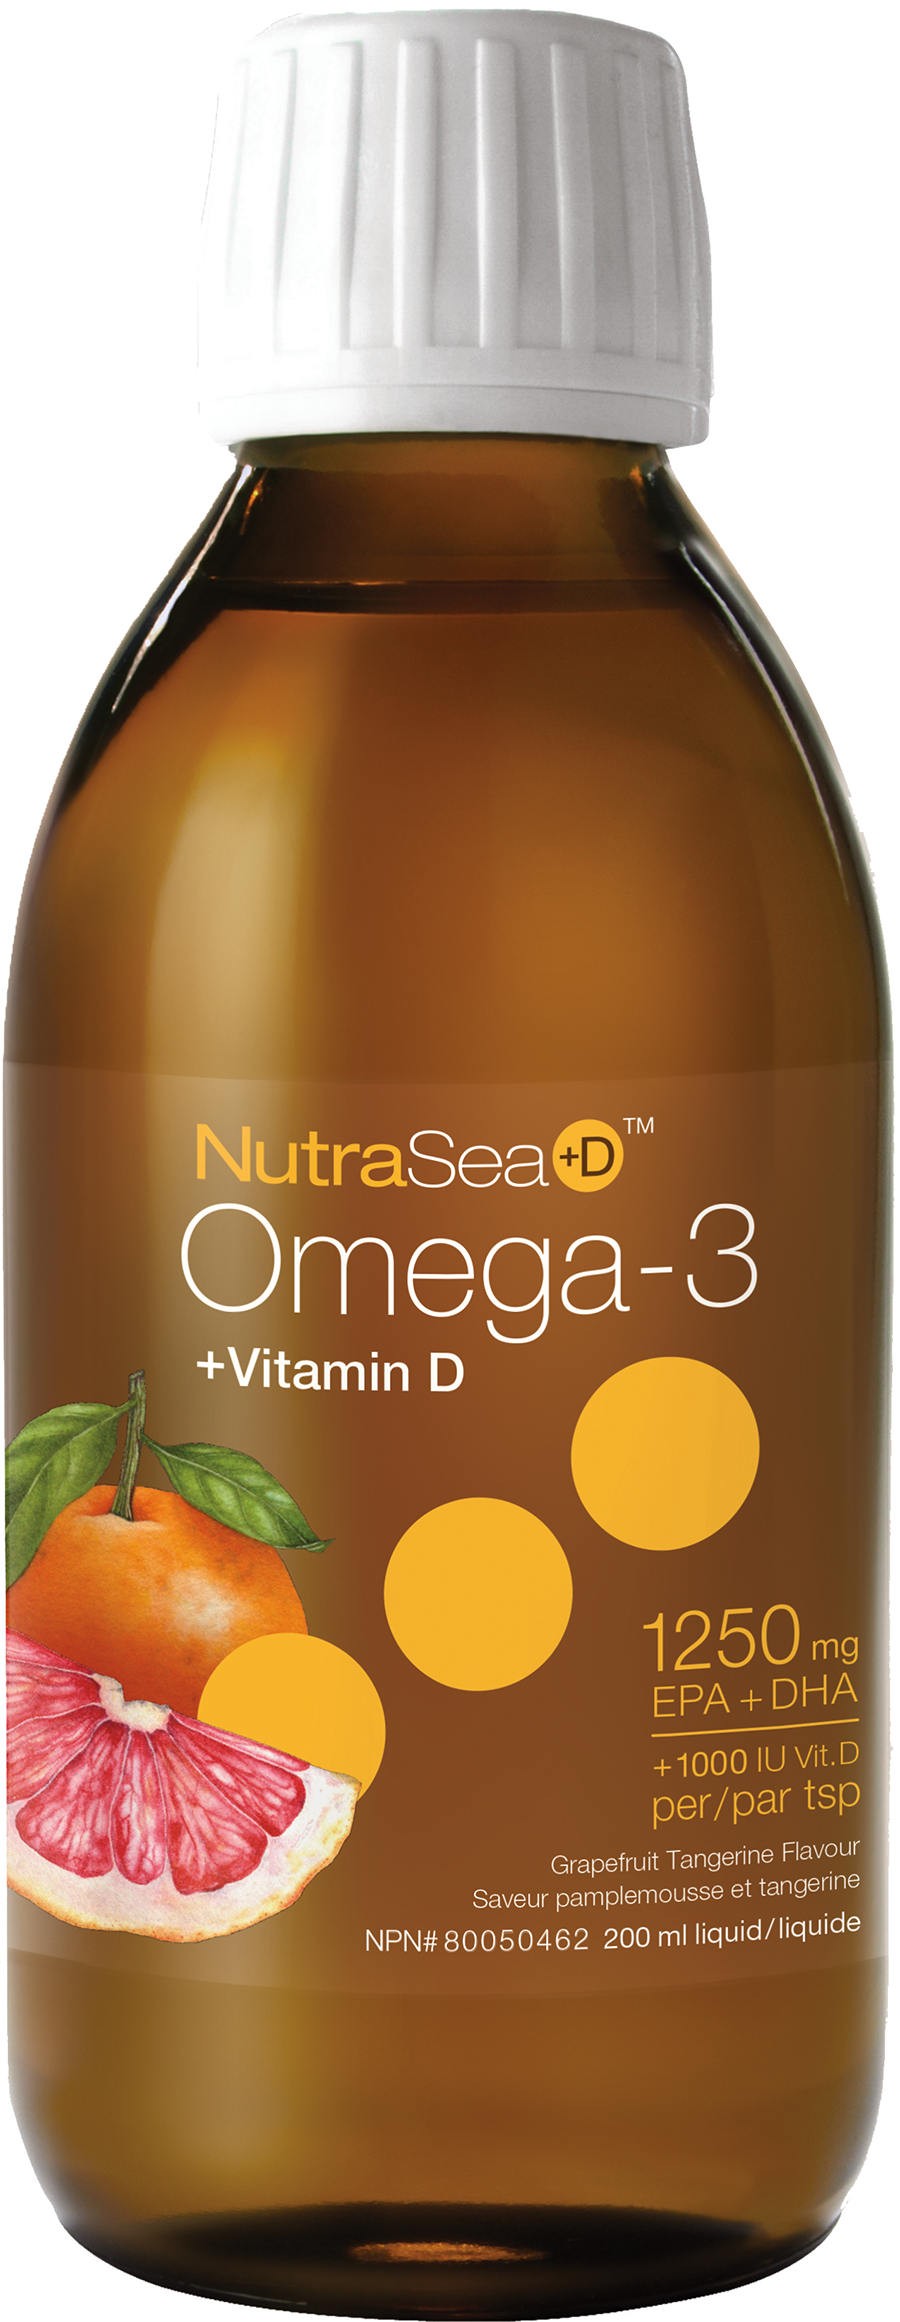 Nutrasea + D Omega-3 Grapefruit Tangerine 200ml